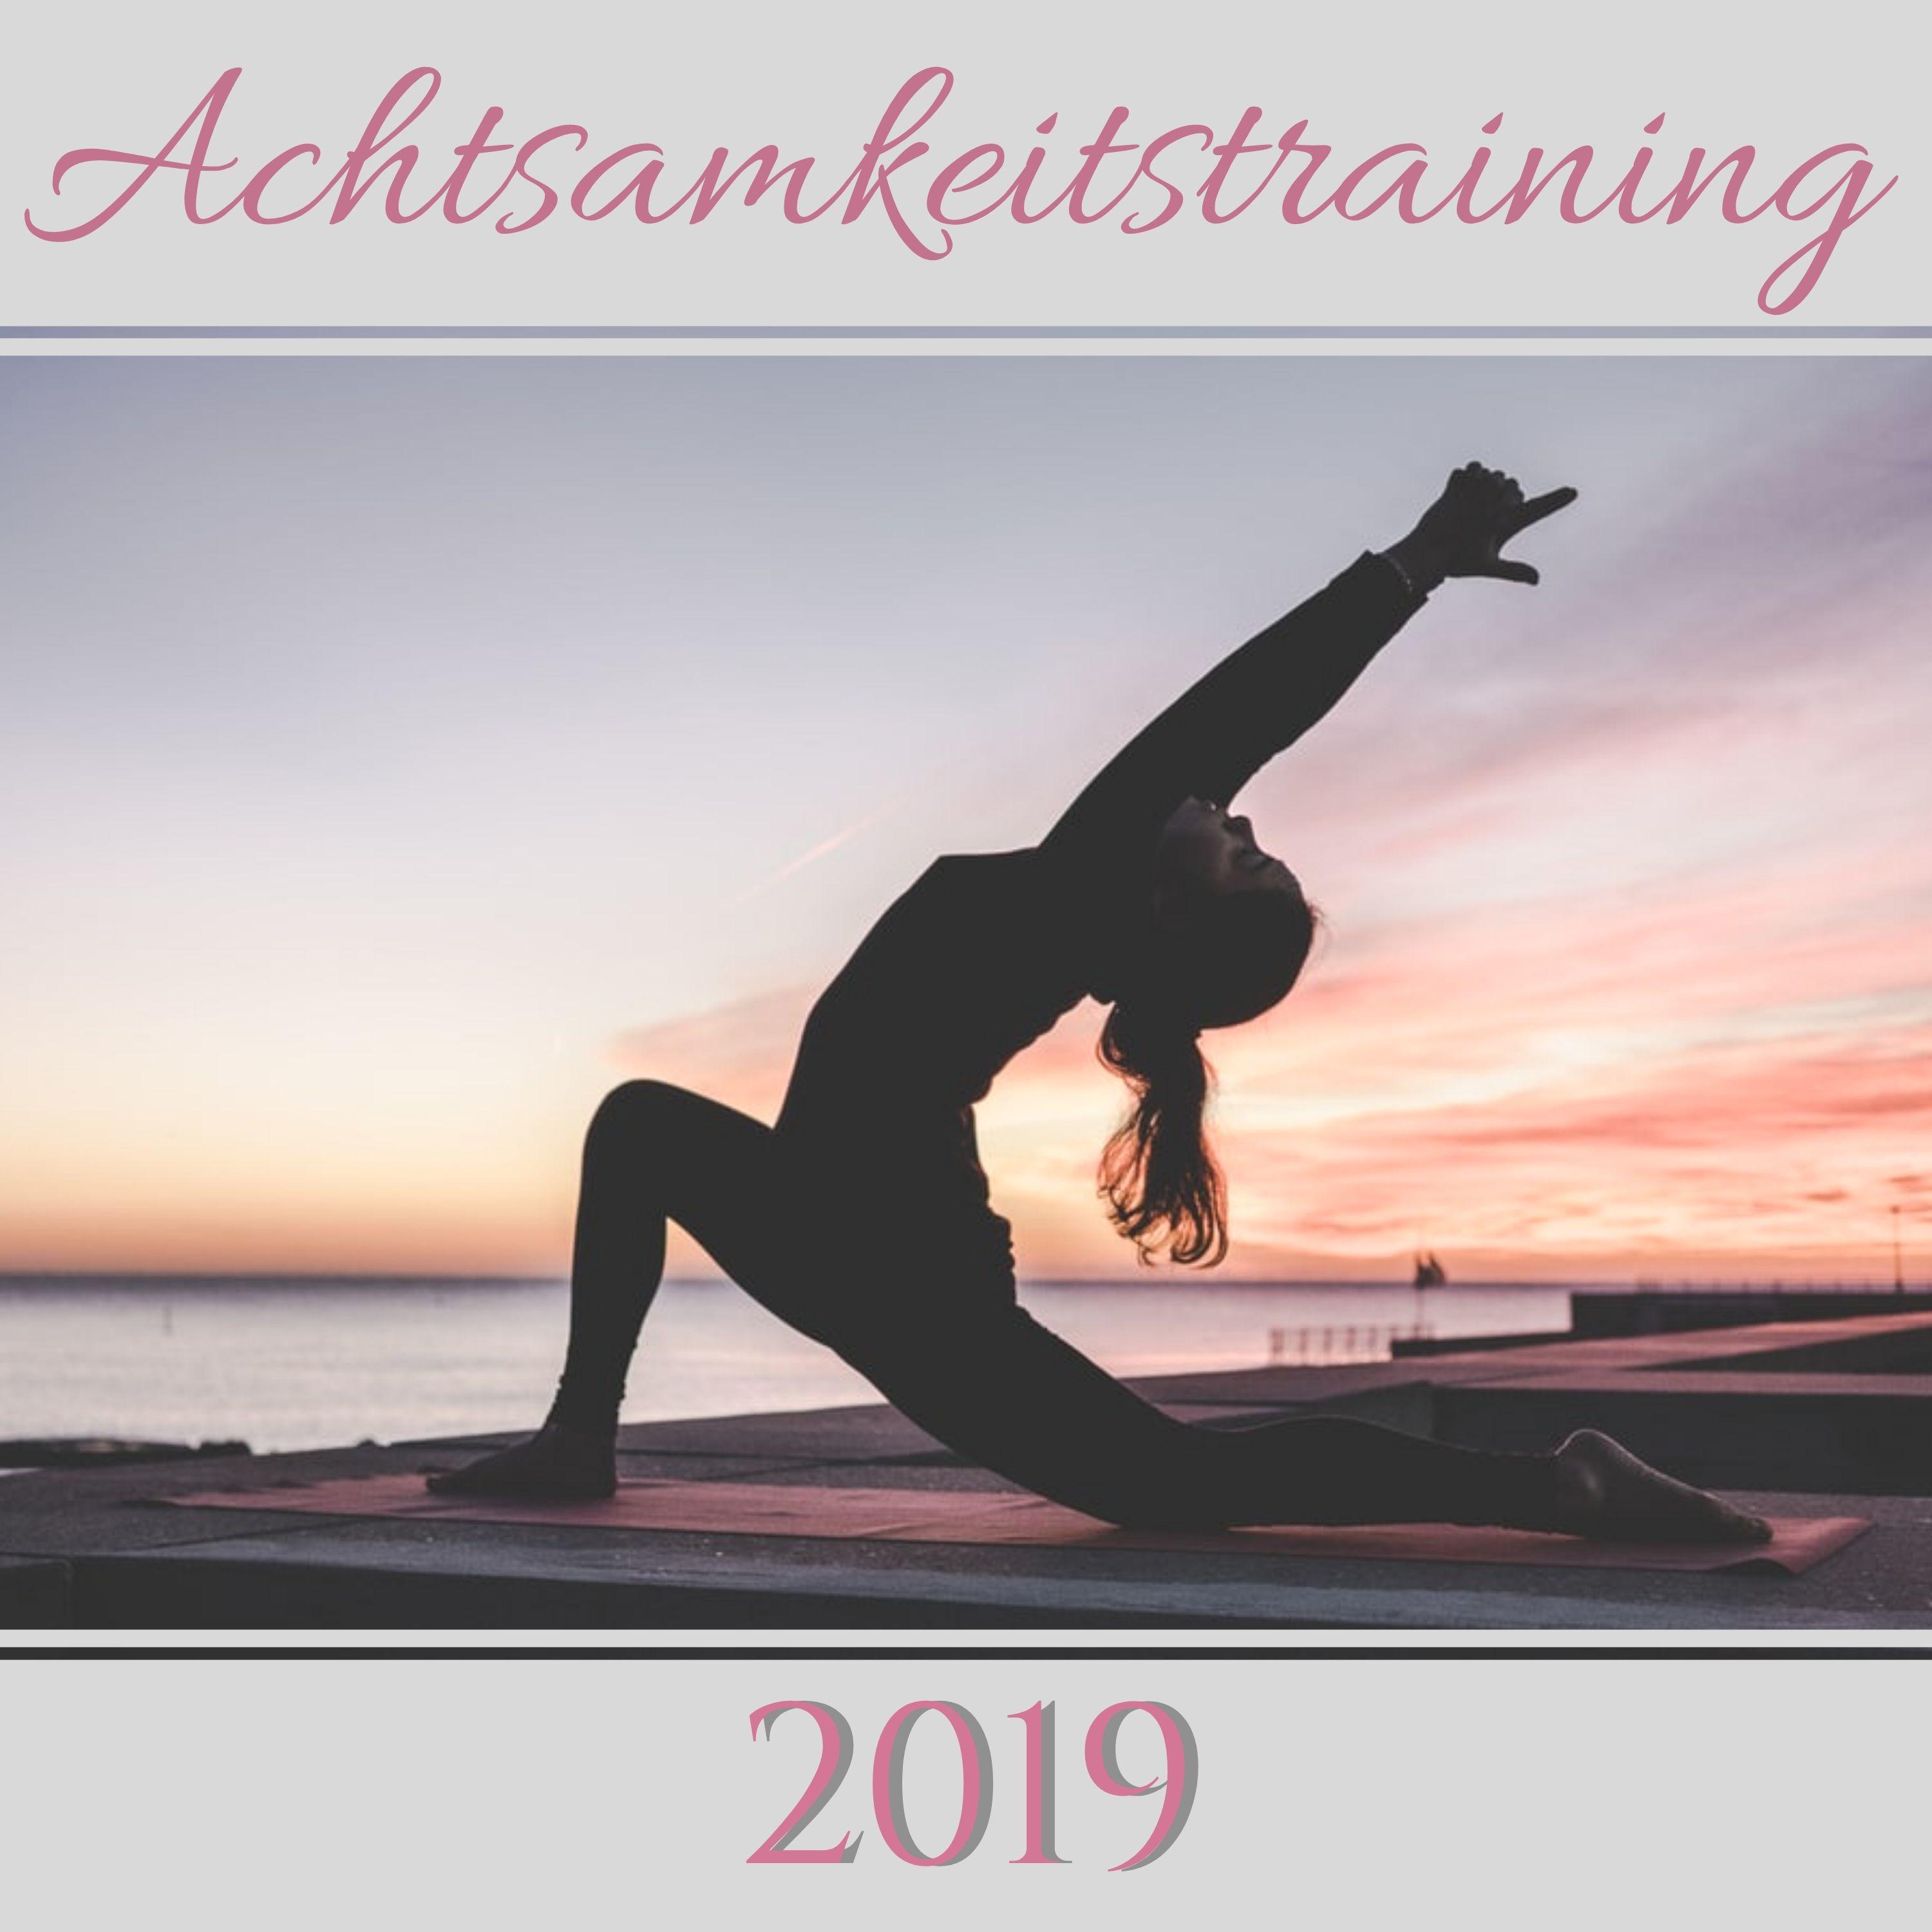 Achtsamkeitstraining 2019 - Achtsamkeit Meditationsmusik für Mehr Wohlbefinden, Innere Ruhe und Ausgeglichenheit